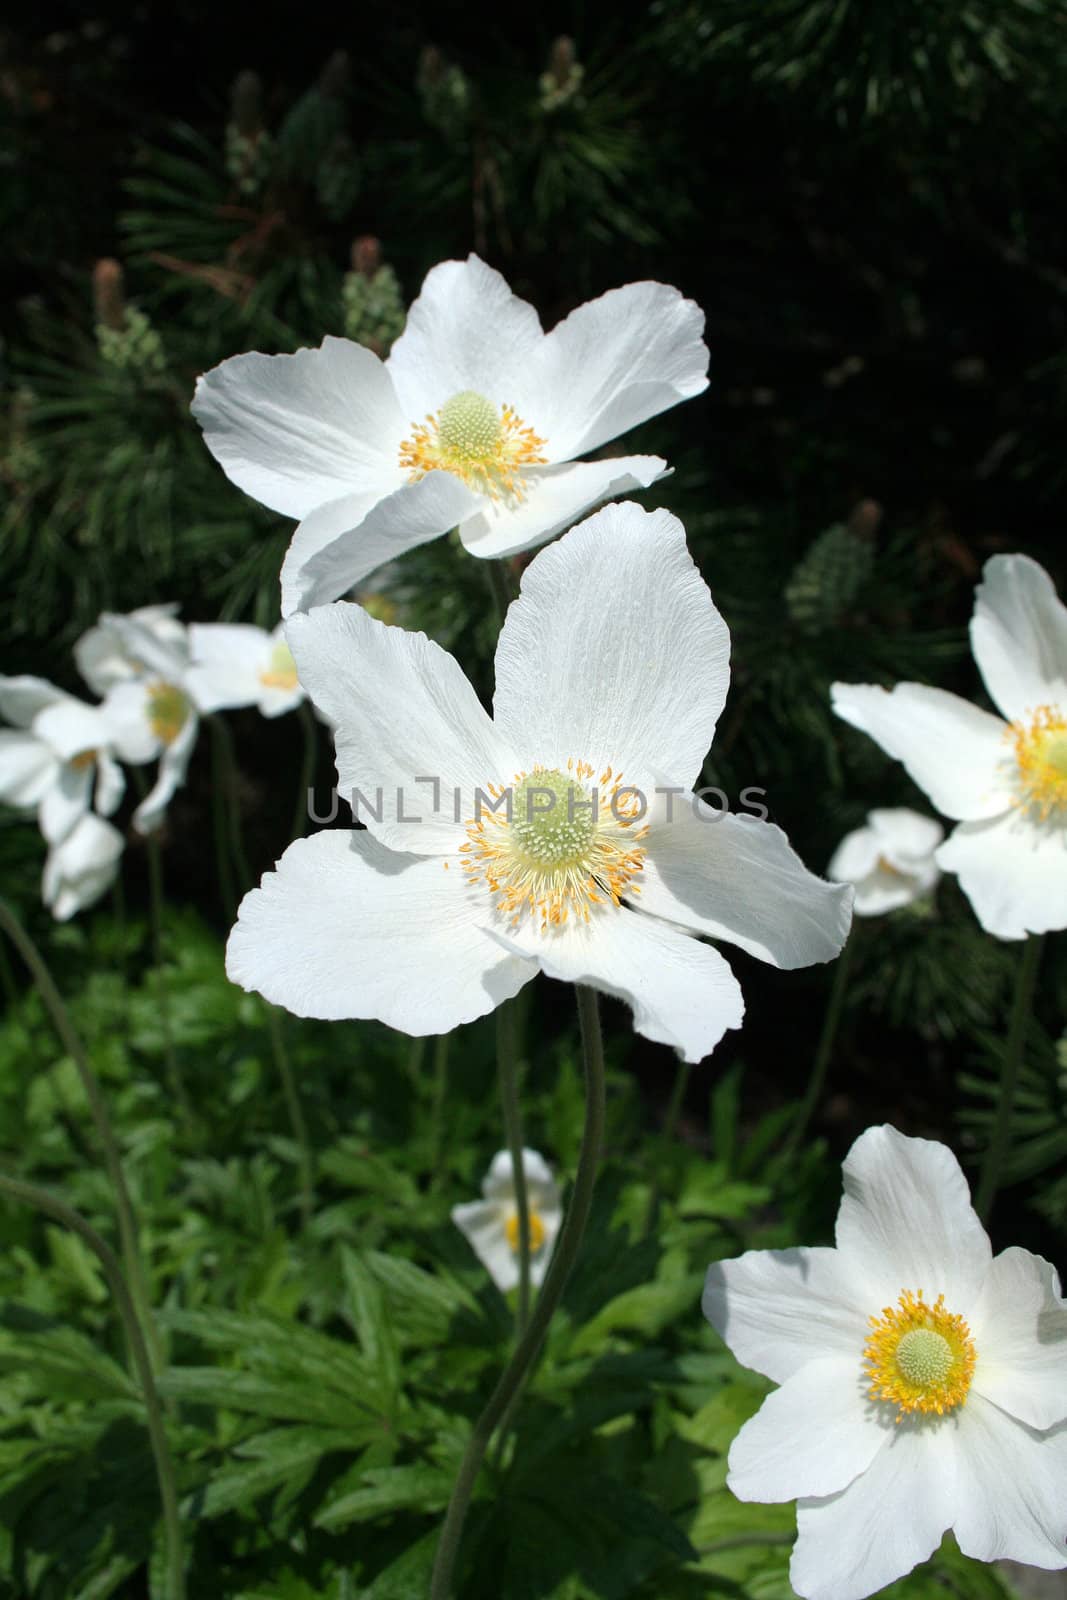 white flower in the garden by furzyk73